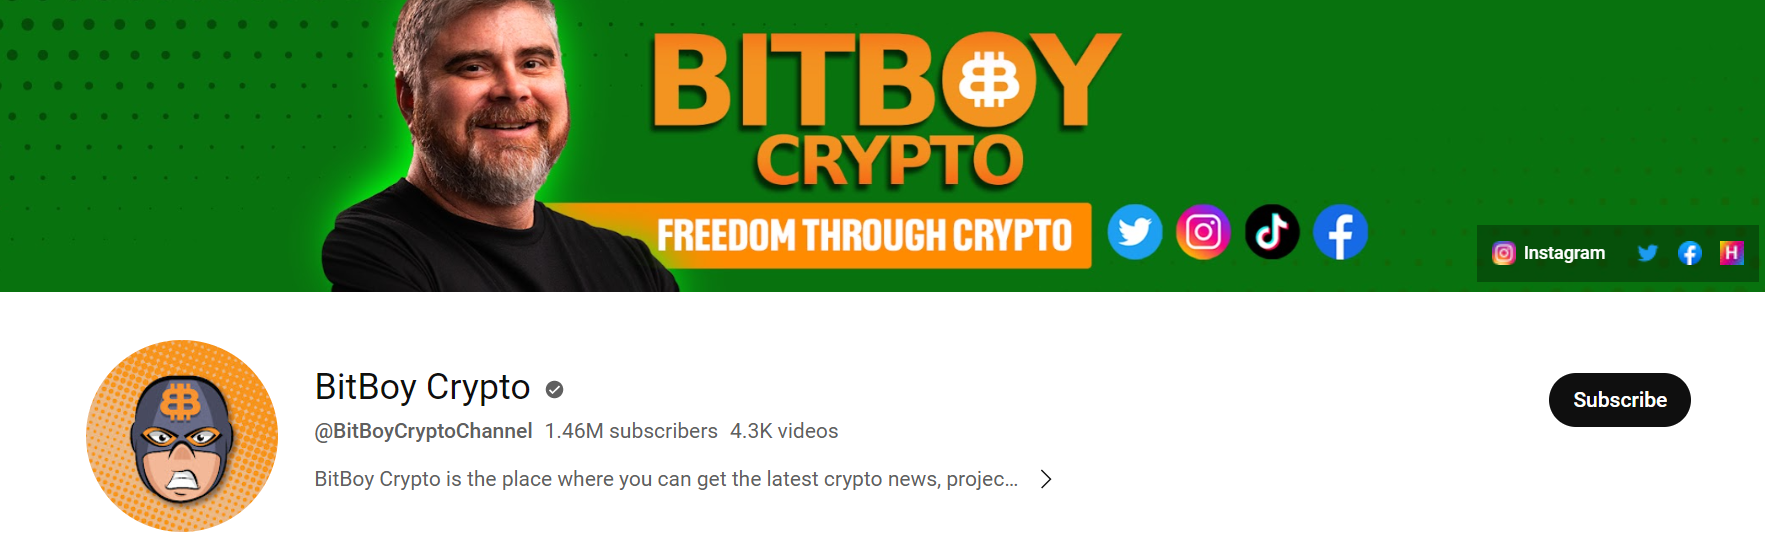 BitBoy Crypto 